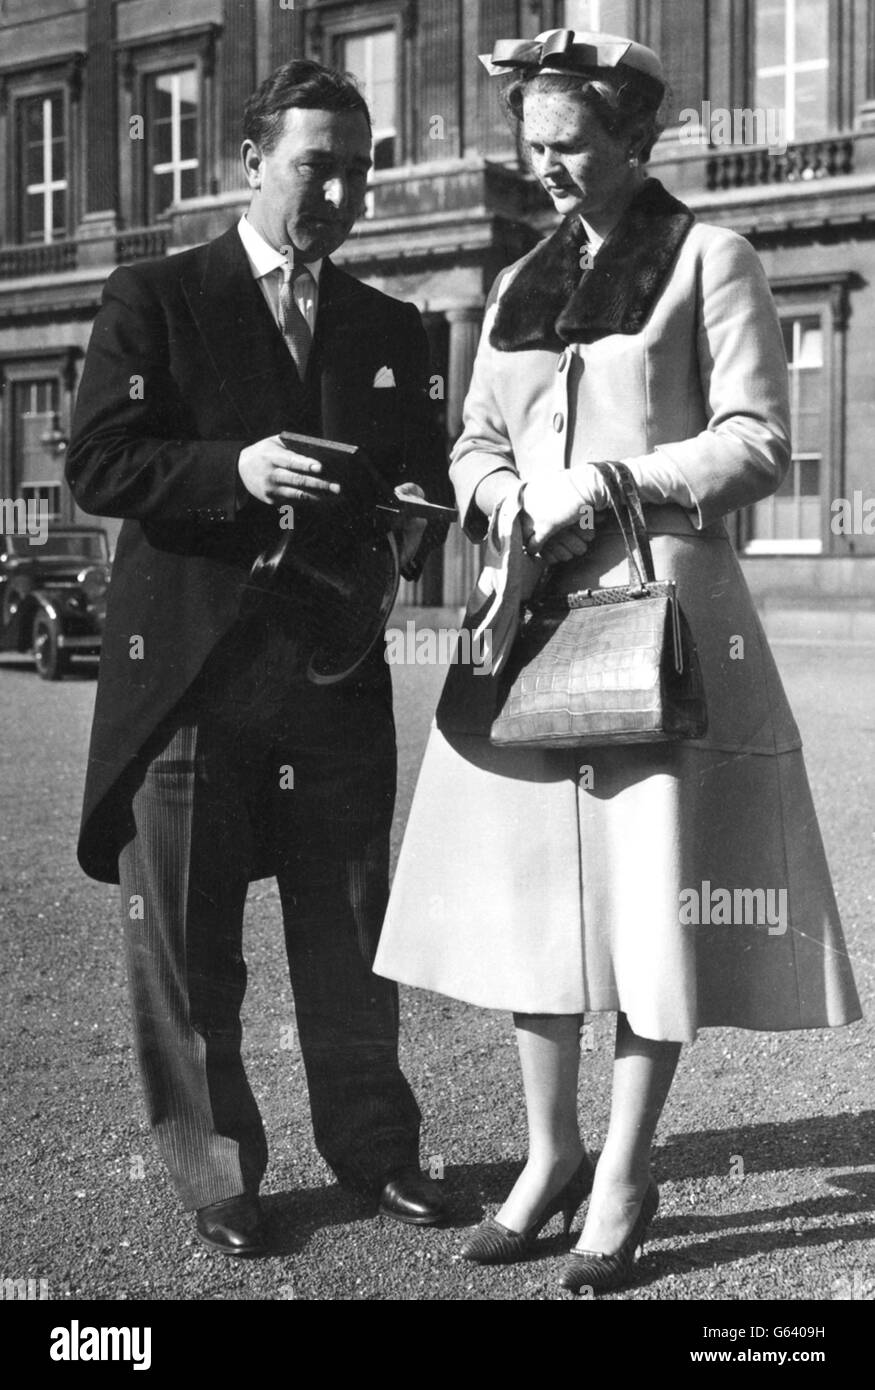 Il Cricketer Denis Compton mostra a sua moglie Valerie le insegne di un Comandante dell'Ordine dell'Impero britannico (CBE), che aveva appena ricevuto dalla Regina, quando lasciarono Buckingham Palace dopo l'investitura. Foto Stock